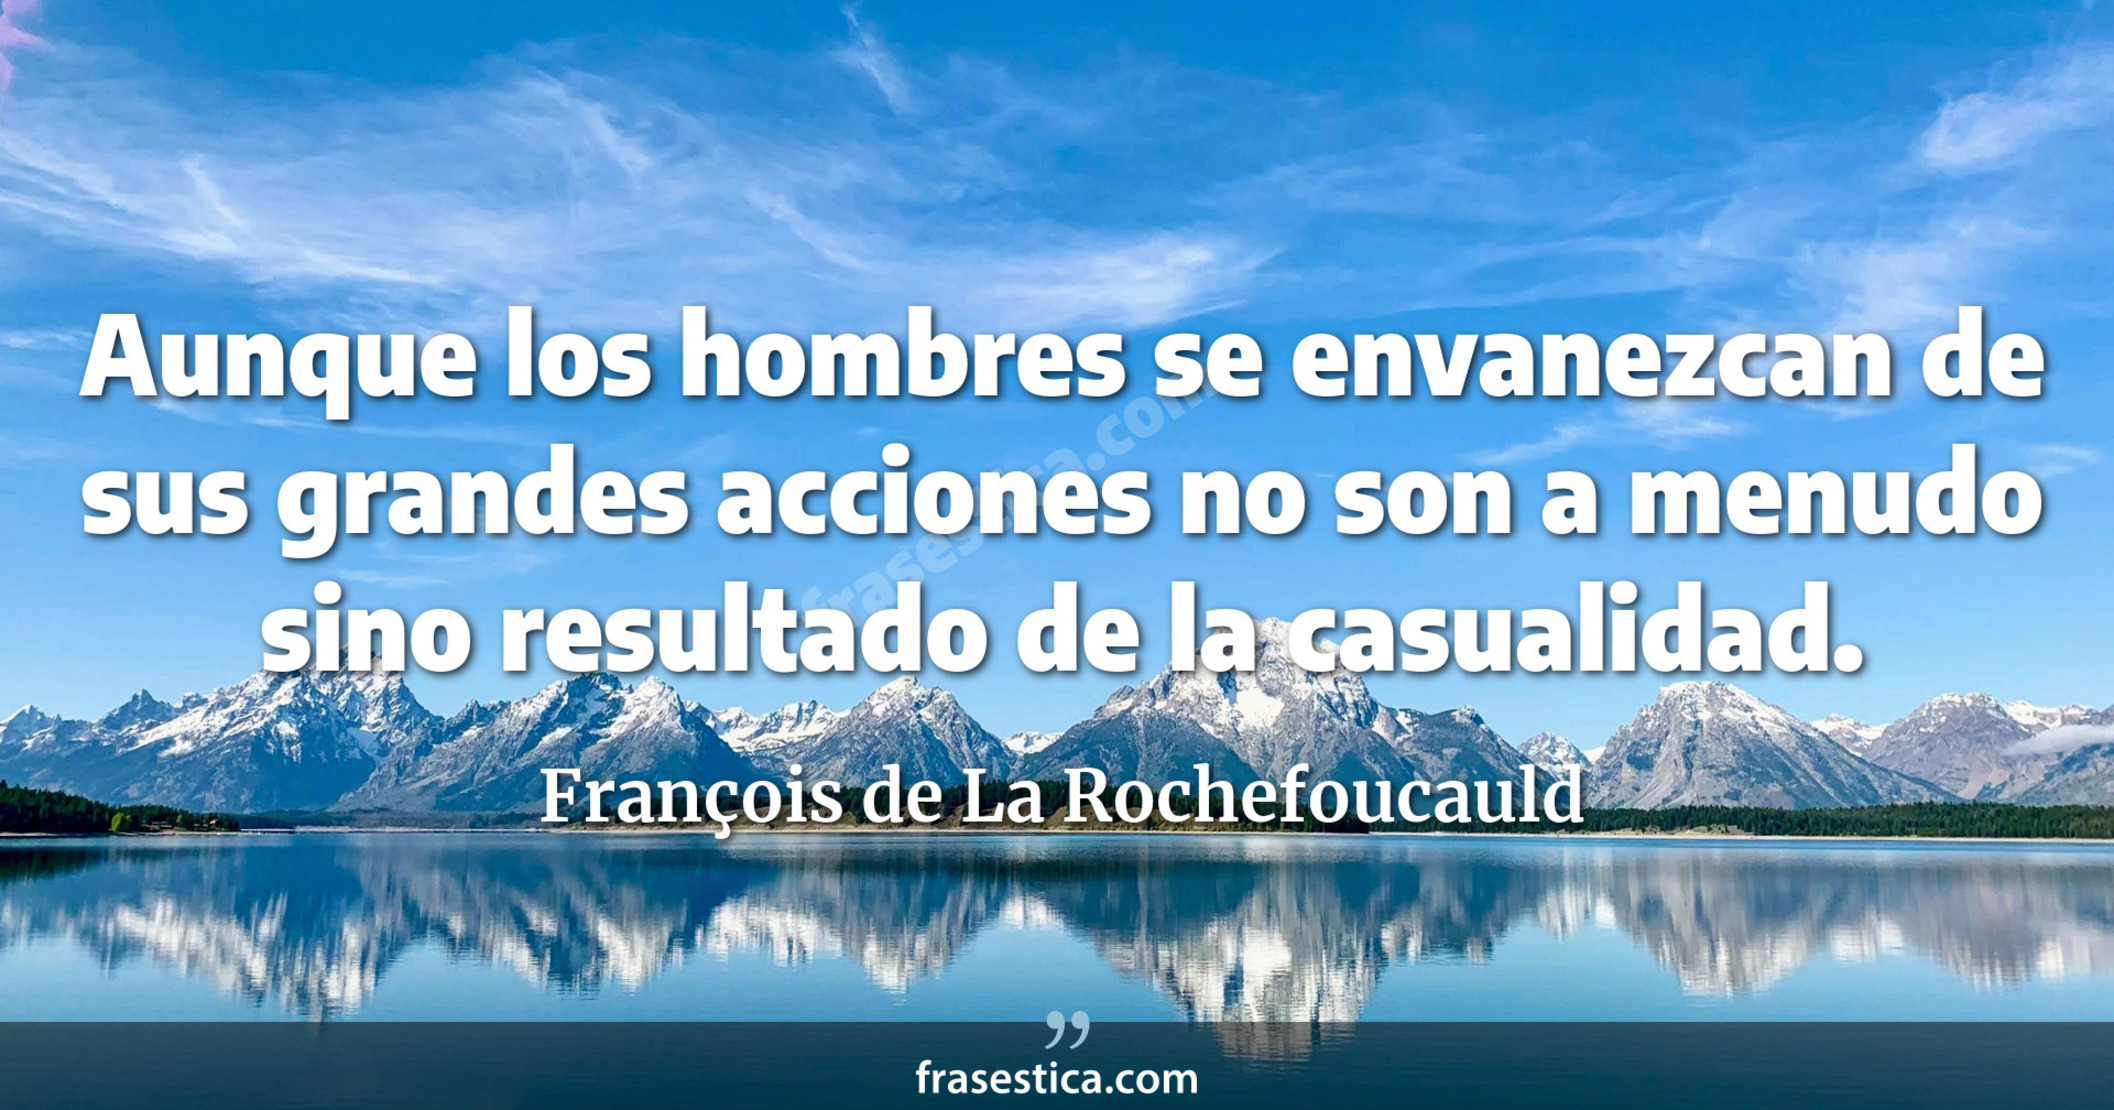 Aunque los hombres se envanezcan de sus grandes acciones no son a menudo sino resultado de la casualidad. - François de La Rochefoucauld